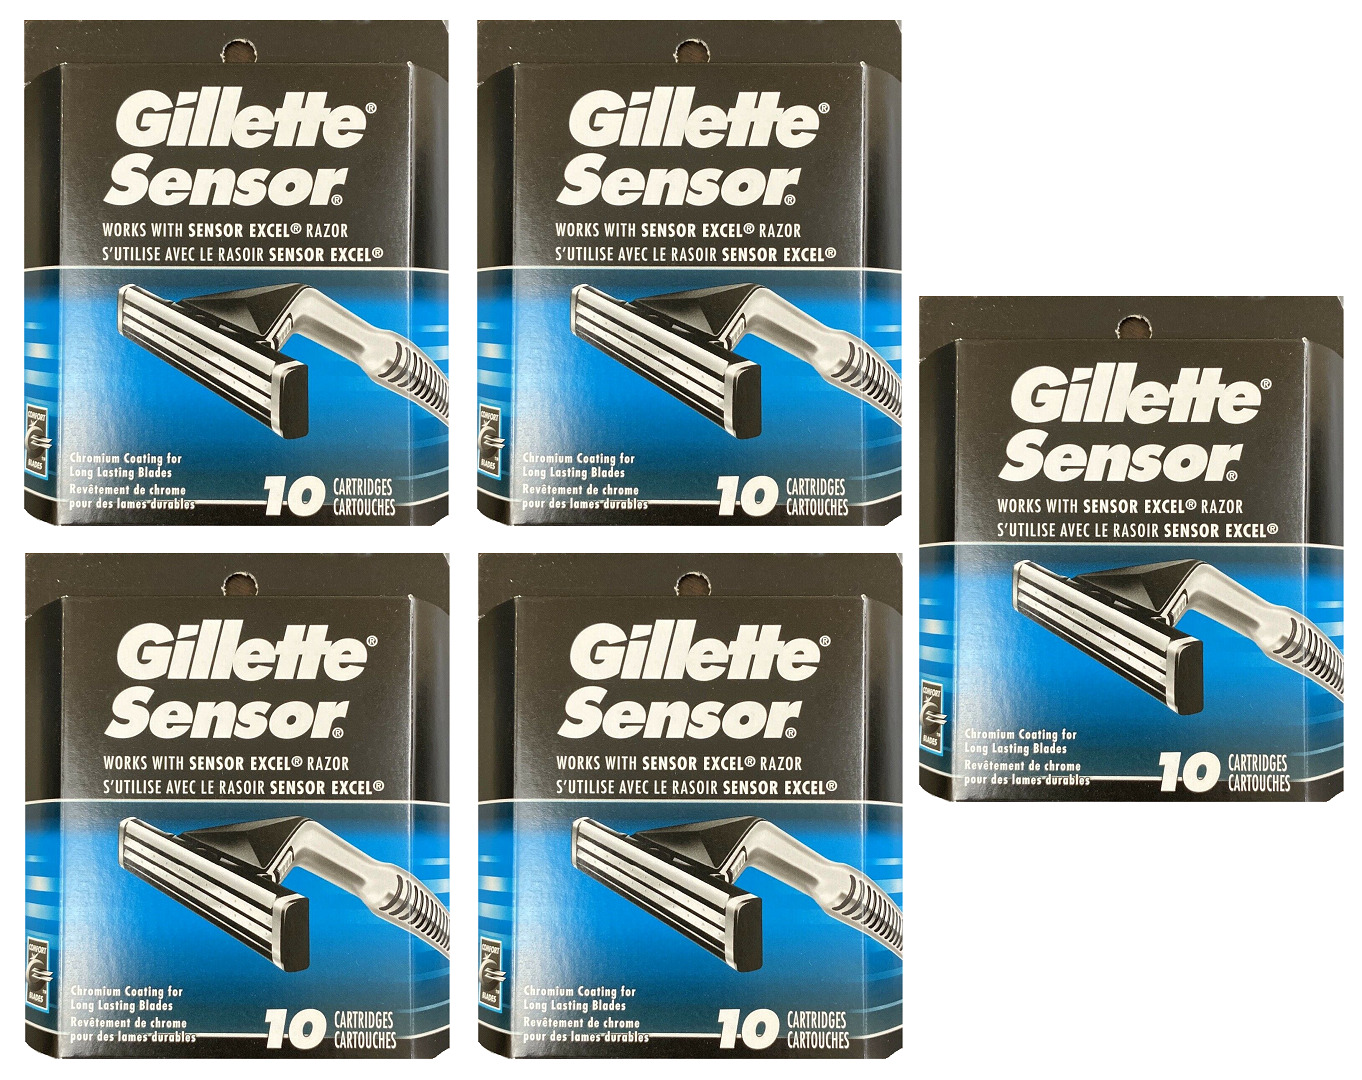 Gillette Sensor Razor Blades, Works with Sensor Excel Razor - 50 Cartridges